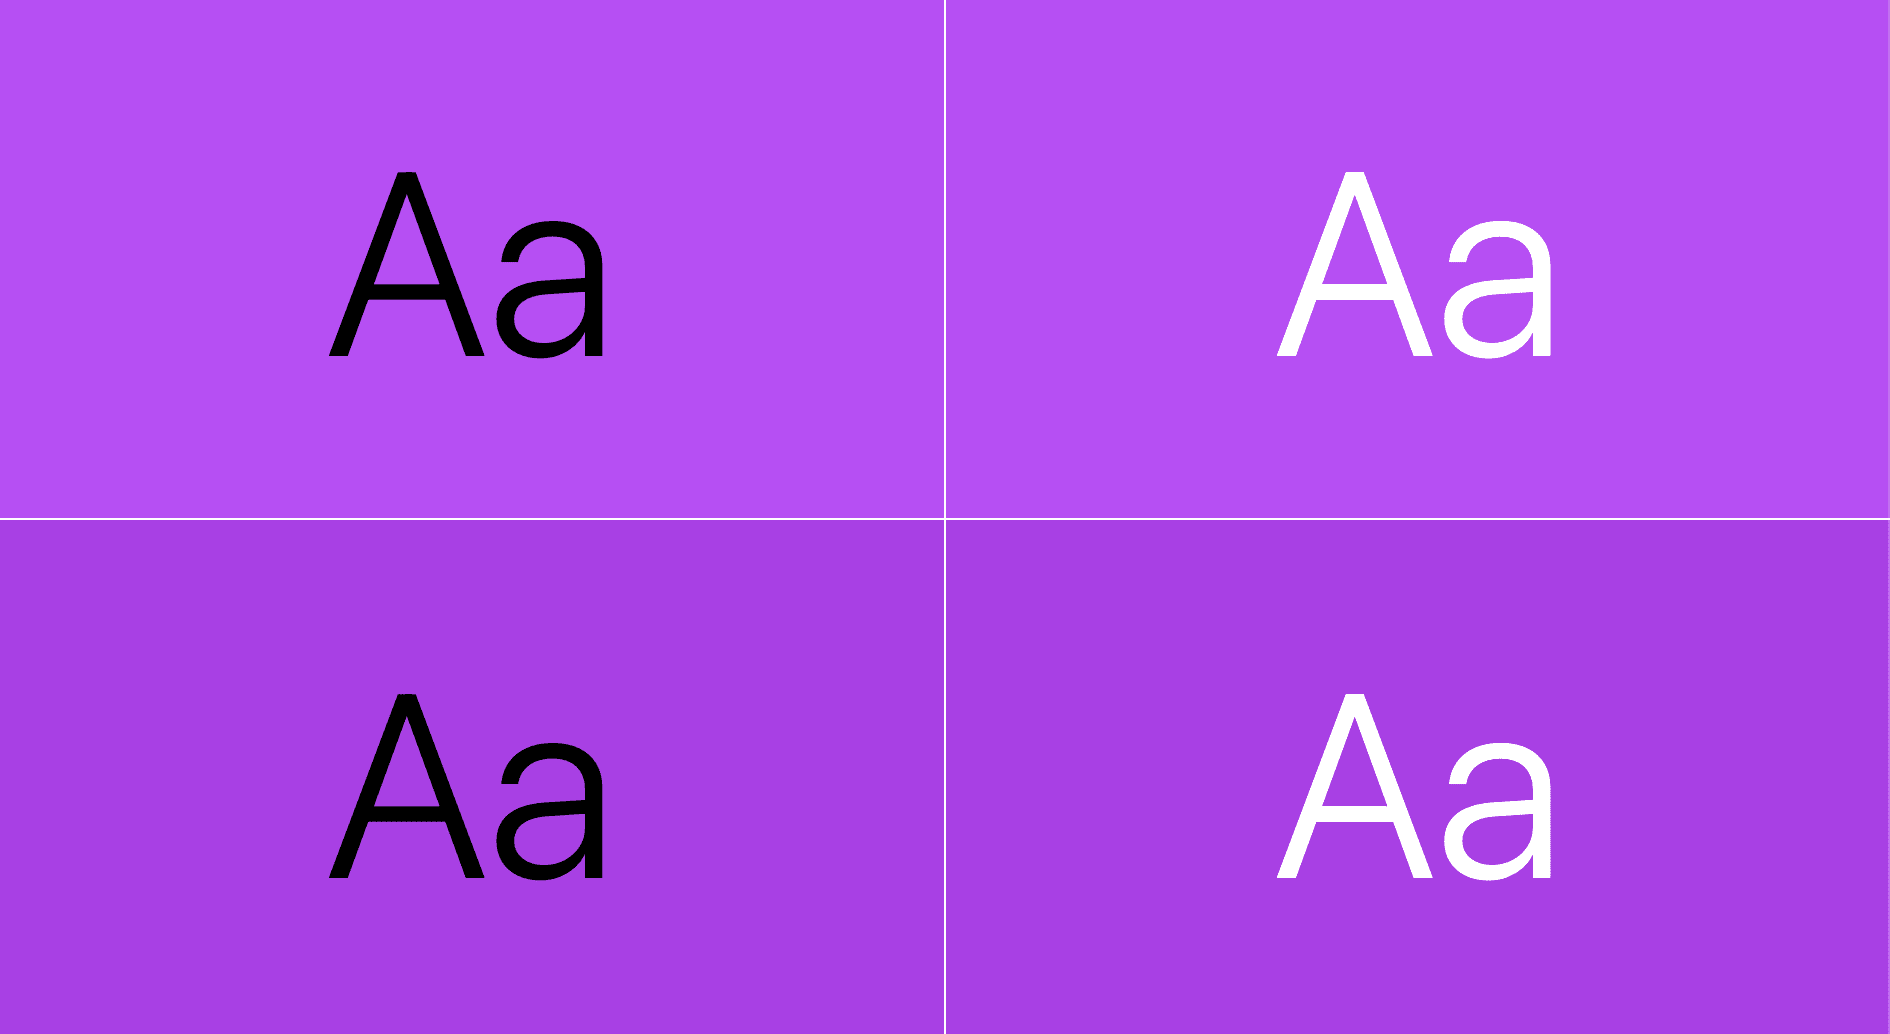 El texto se muestra sobre el color púrpura: una combinación es texto negro sobre el púrpura y la otra es texto blanco sobre el púrpura.